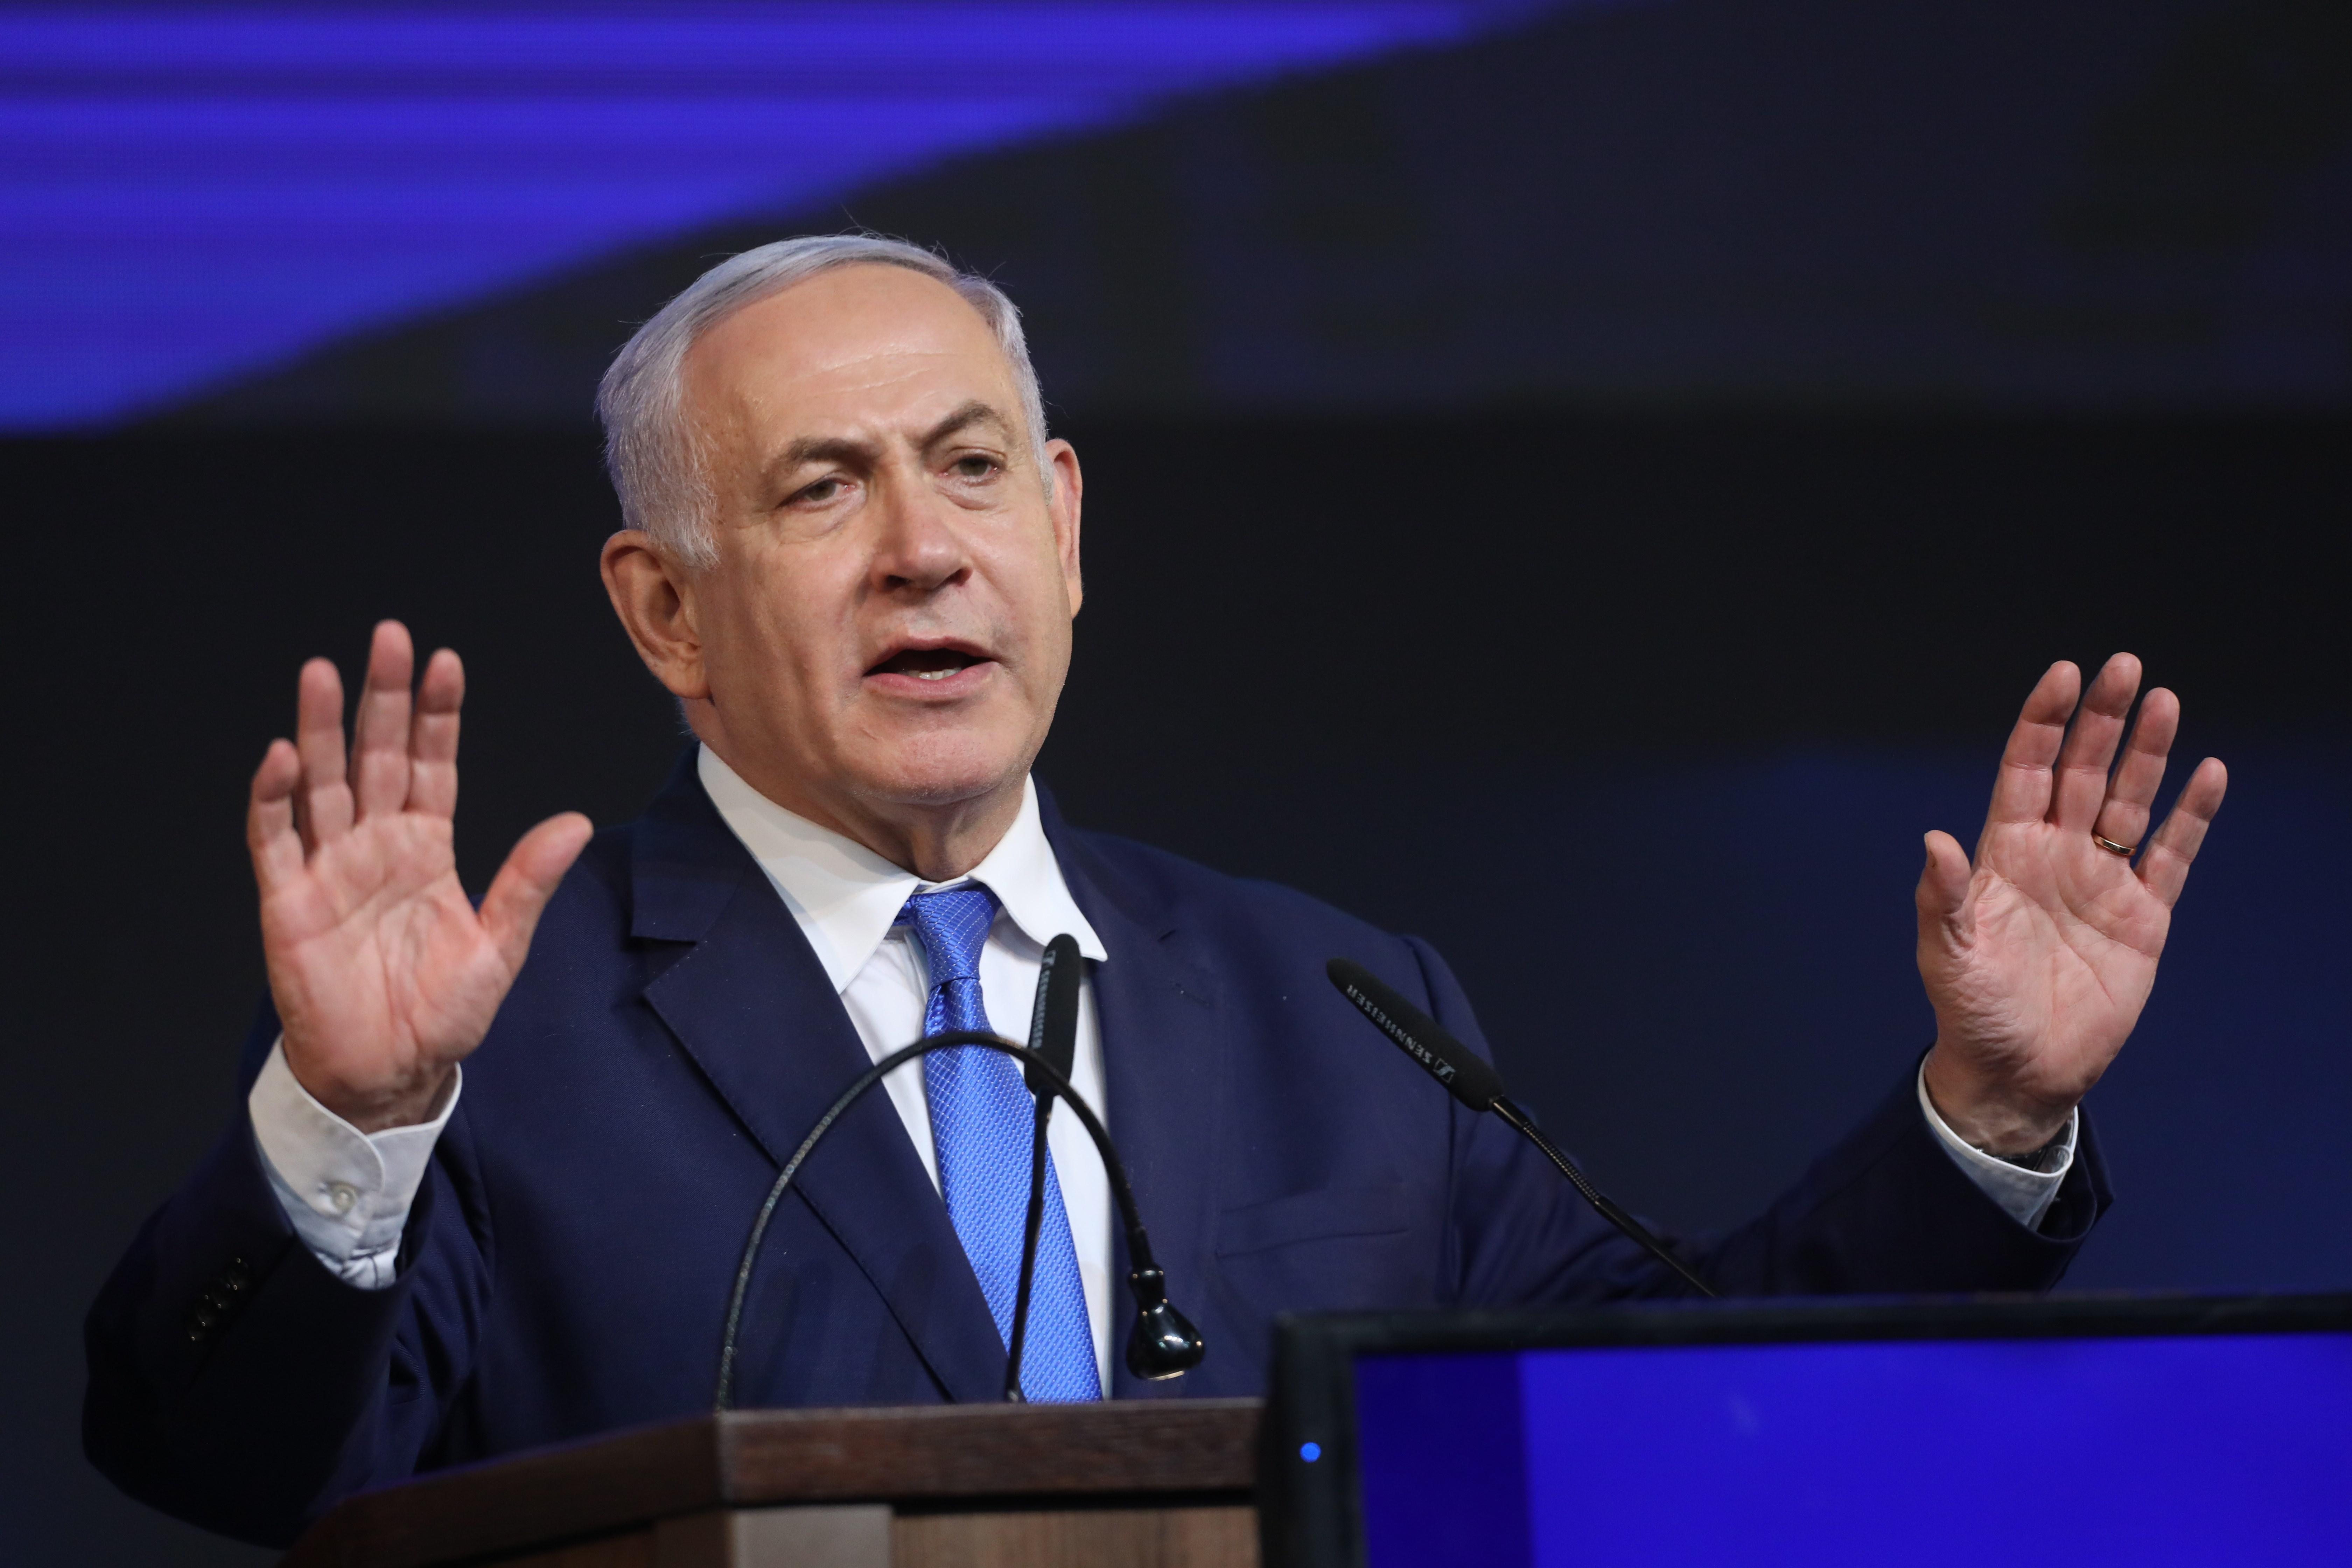 Netanyahu acusado de corrupción, fraude y abuso de confianza